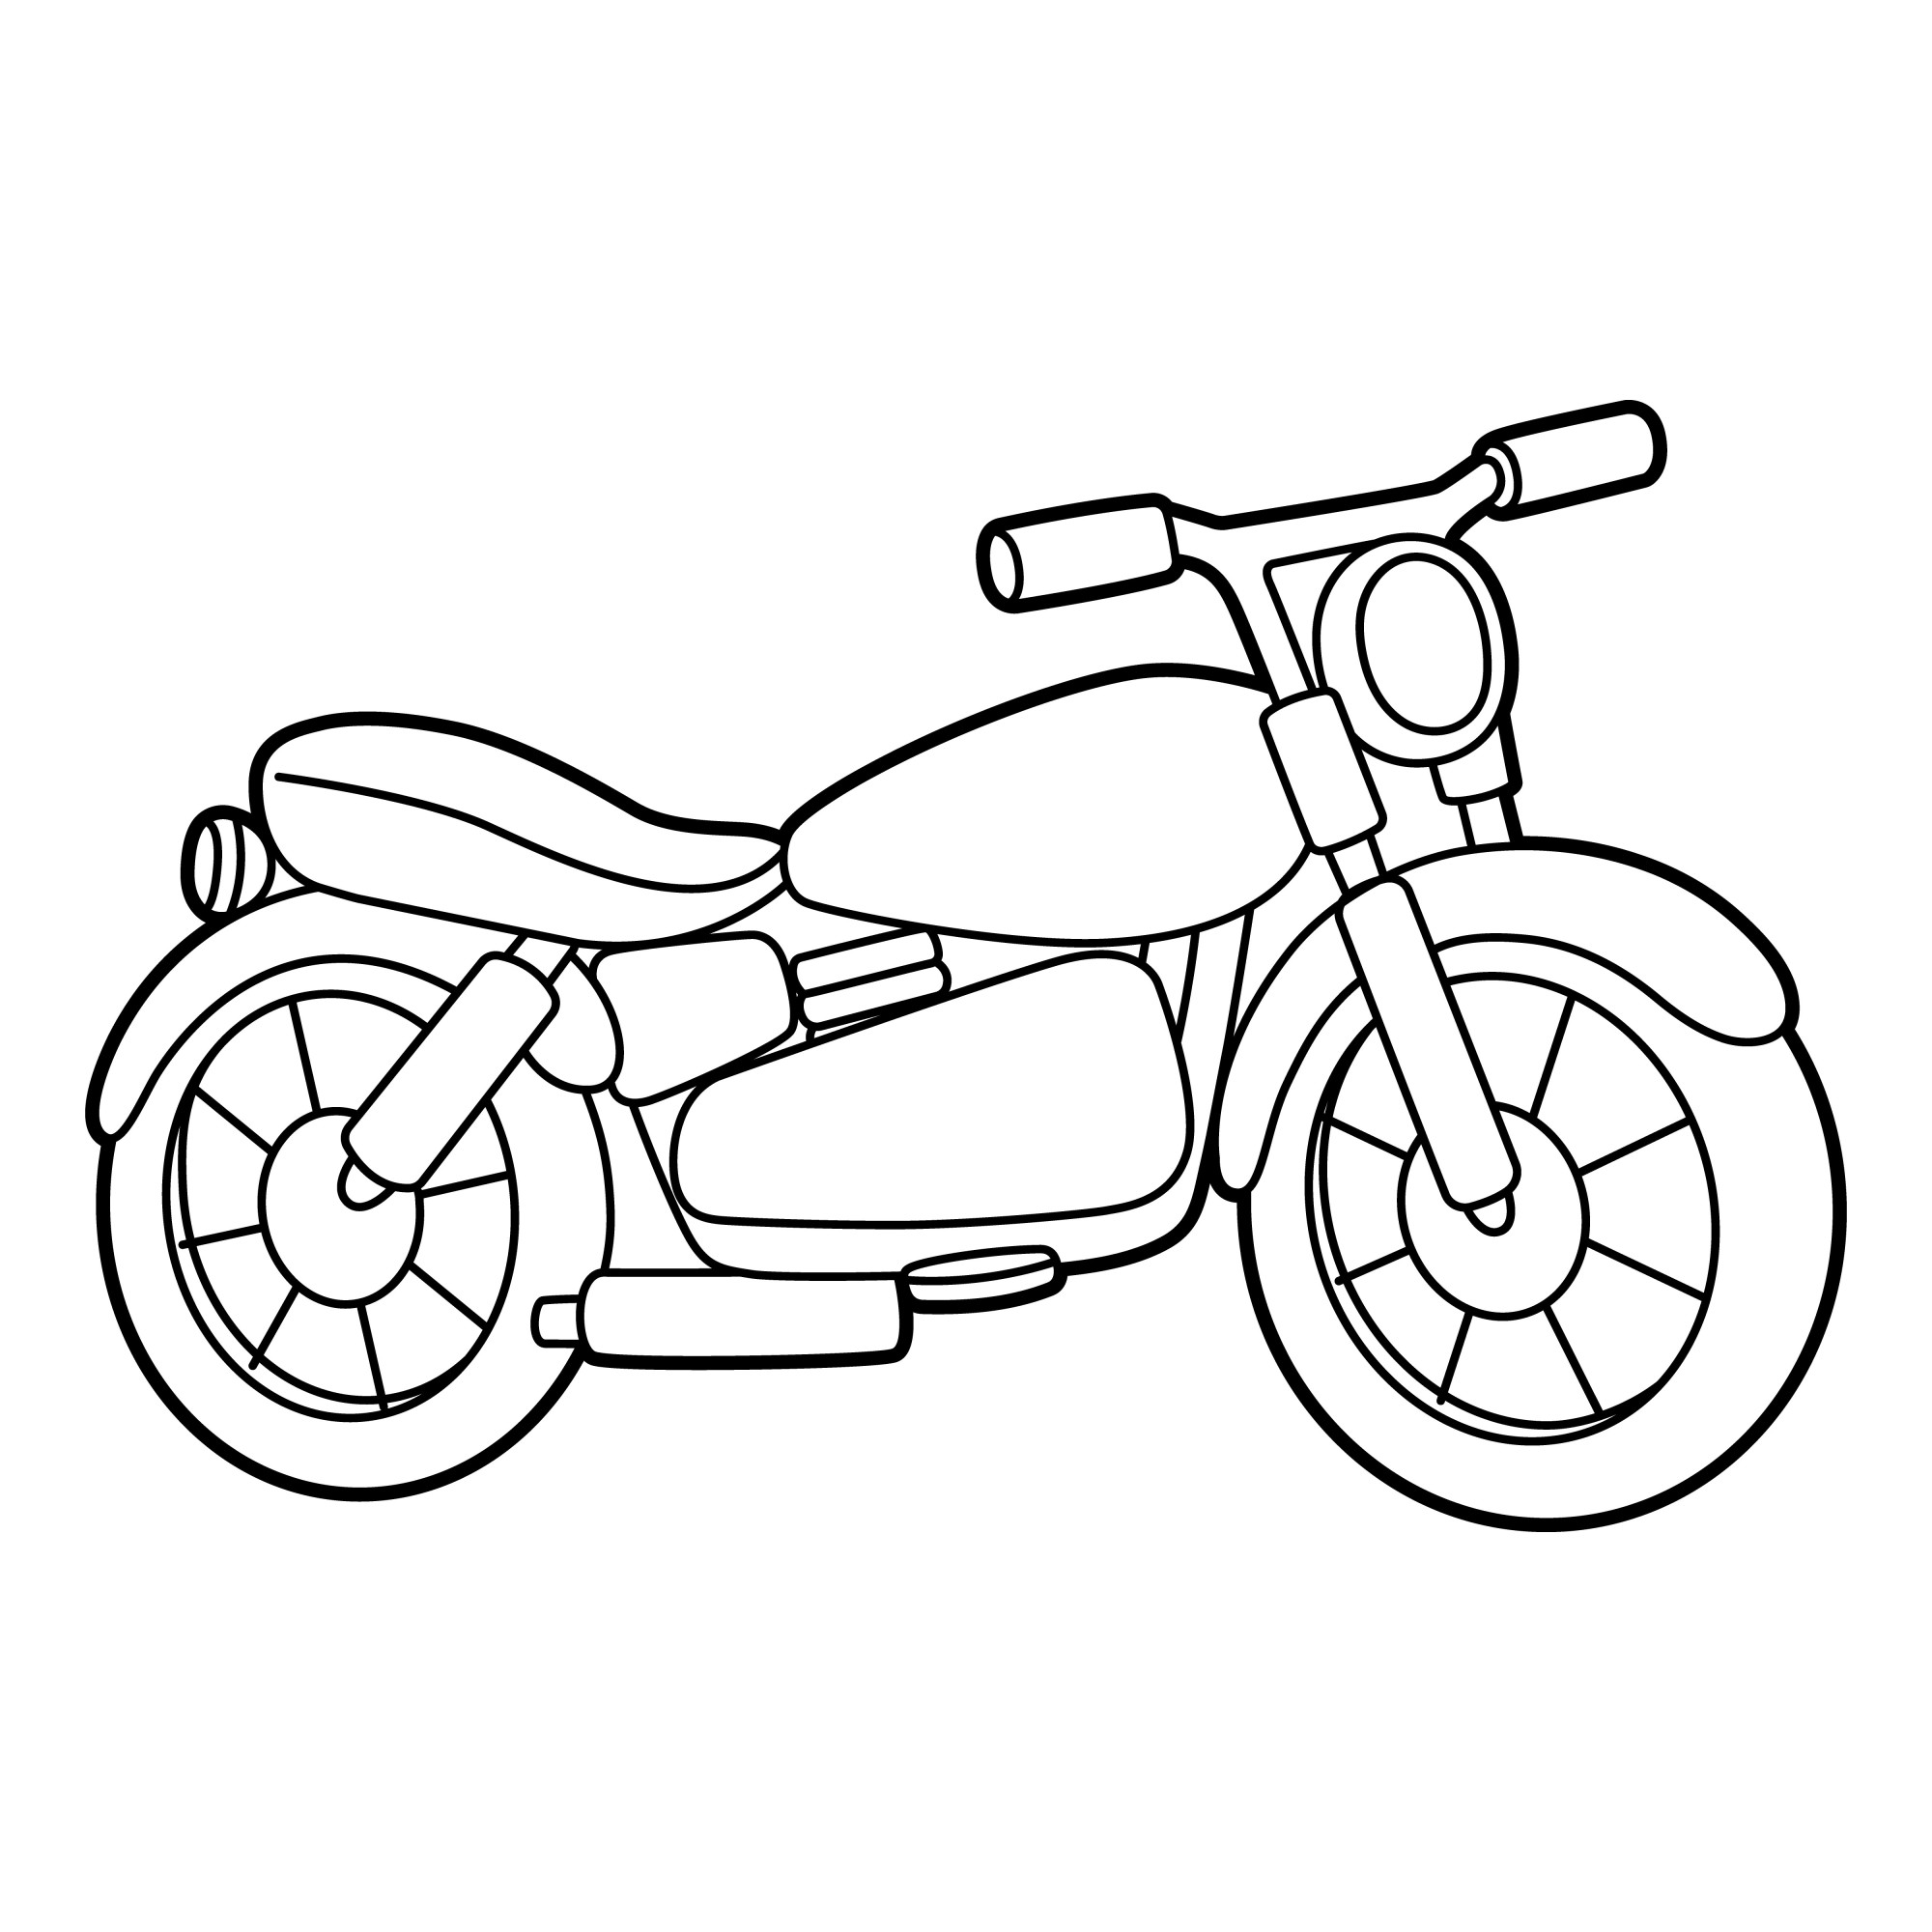 Раскраска для детей: мотоцикл «Мото-горизонты»